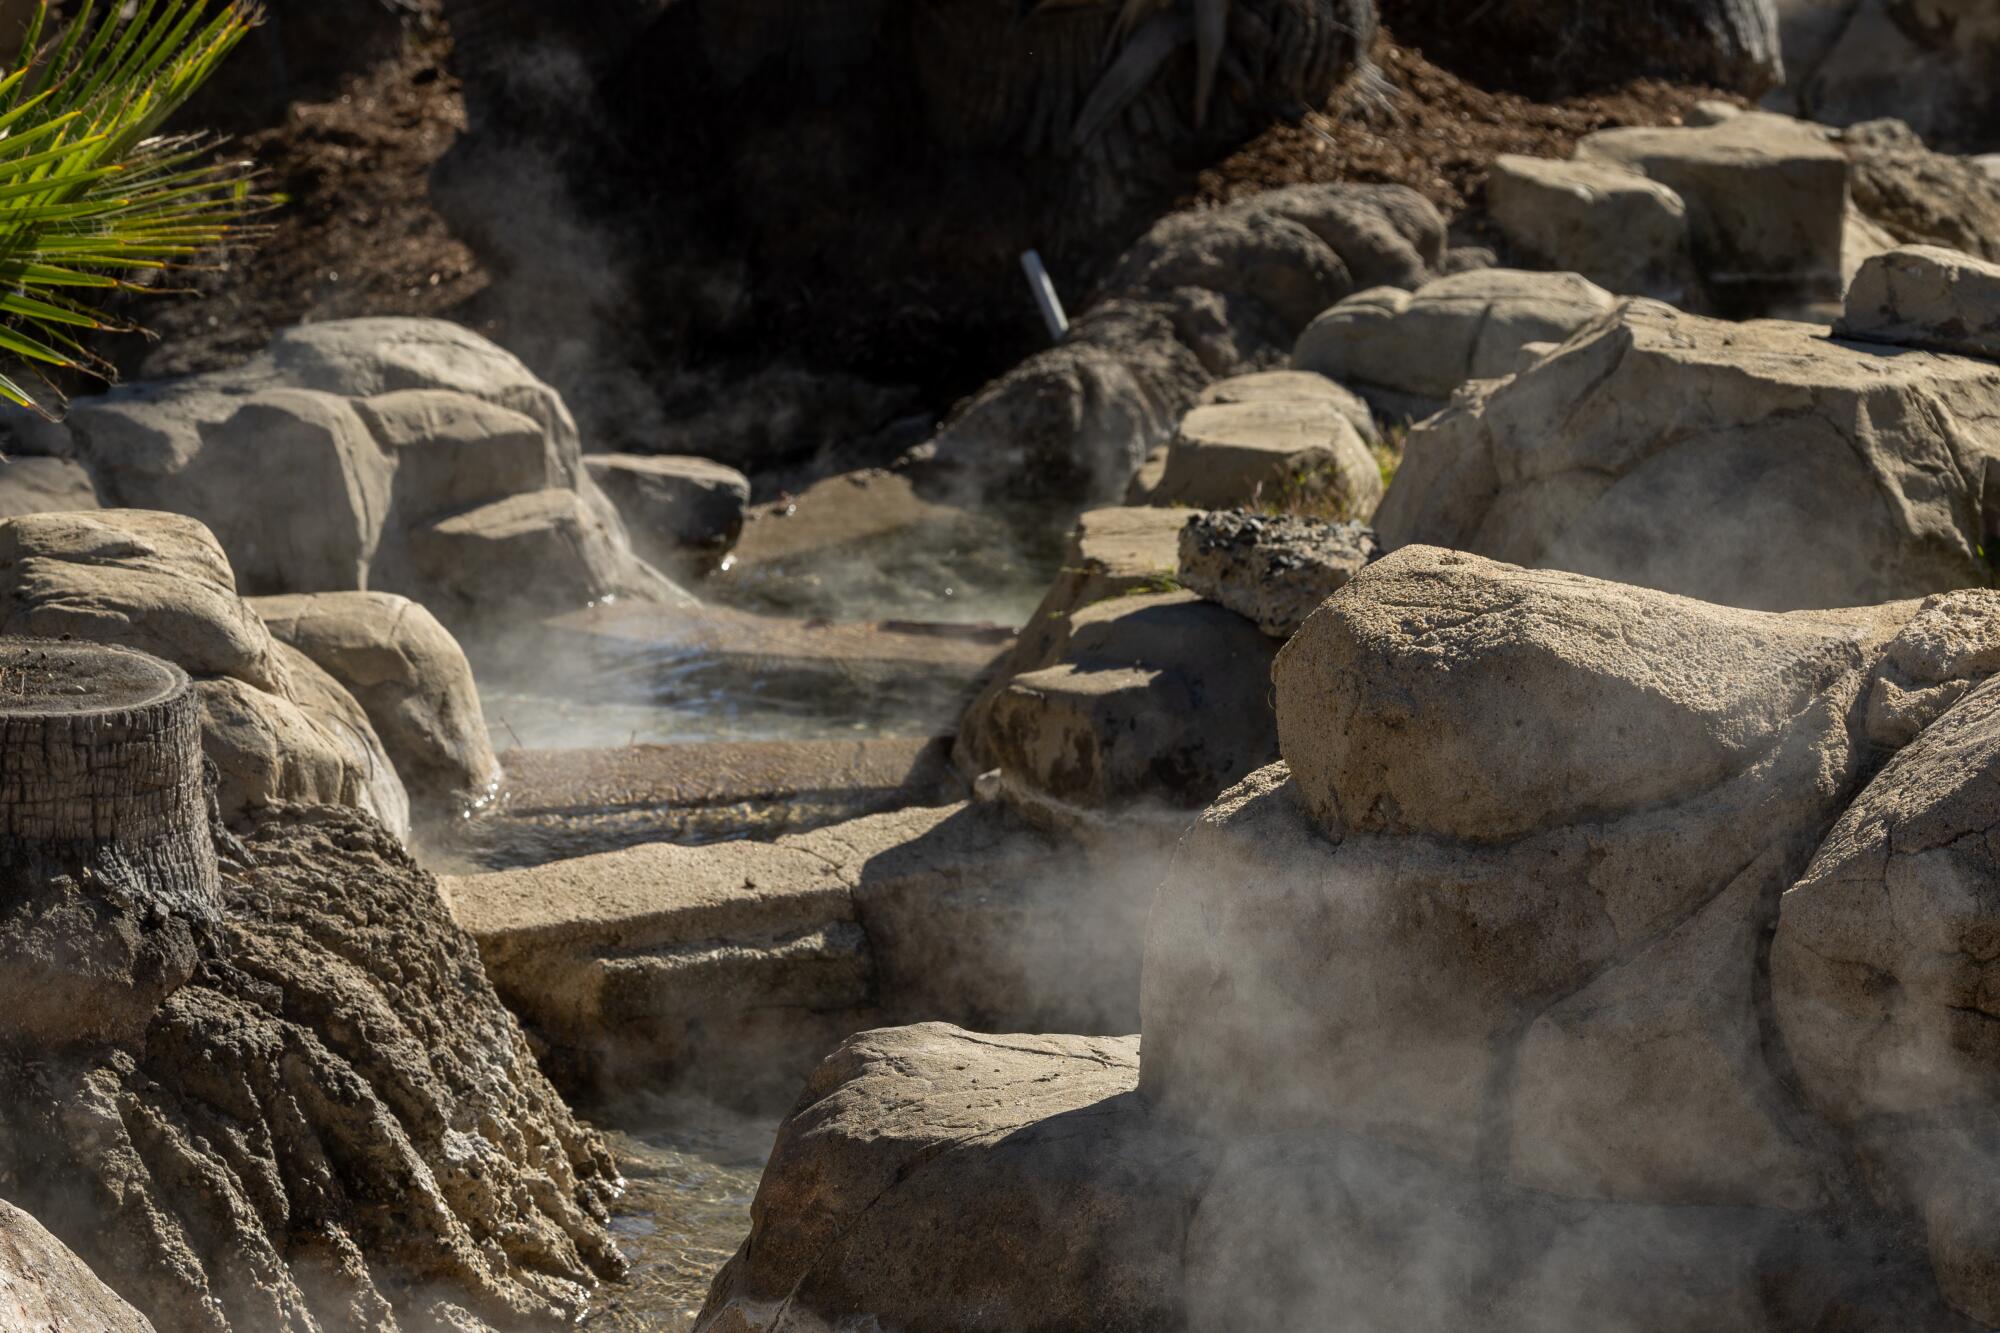 Steam rises from geothermal water flowing through Murrieta Hot Springs Resort.